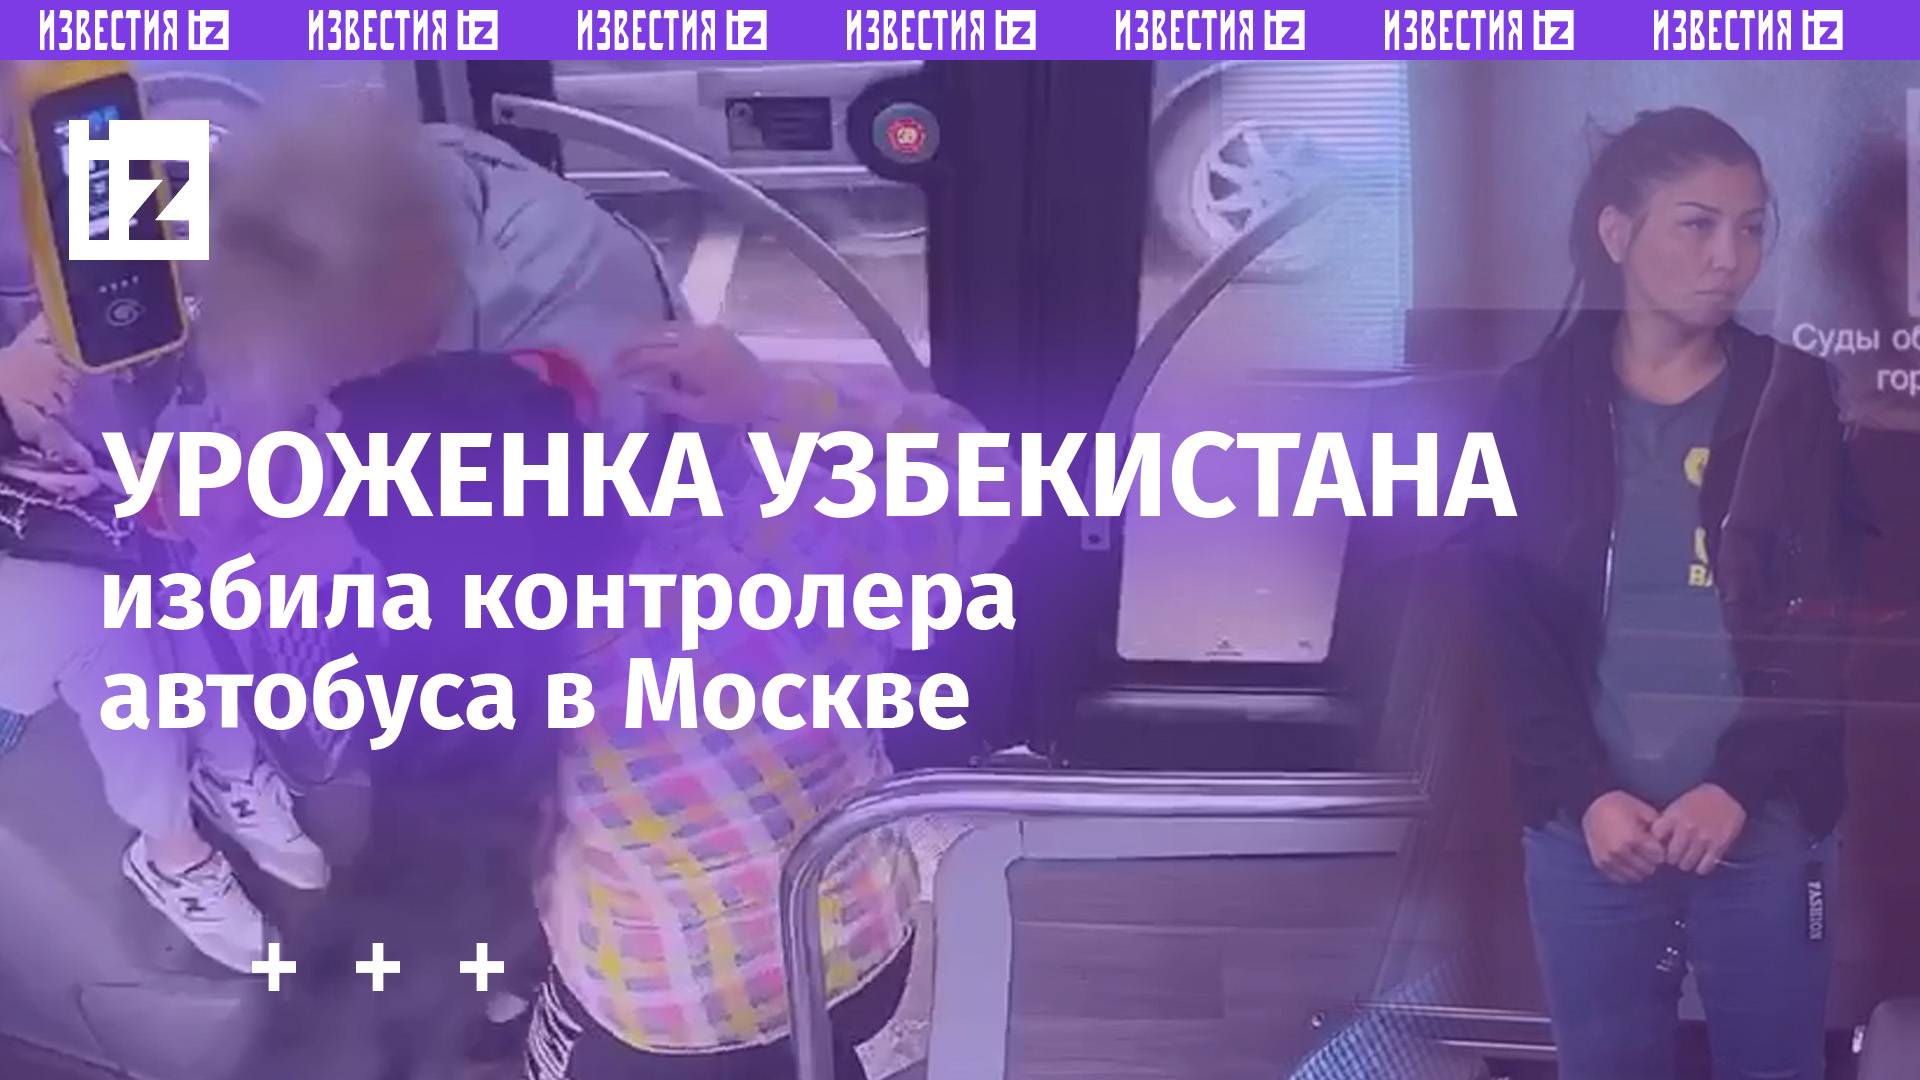 Буйная узбечка-нелегалка избила контролера автобуса в Москве. Девушку арестовали на полтора месяца